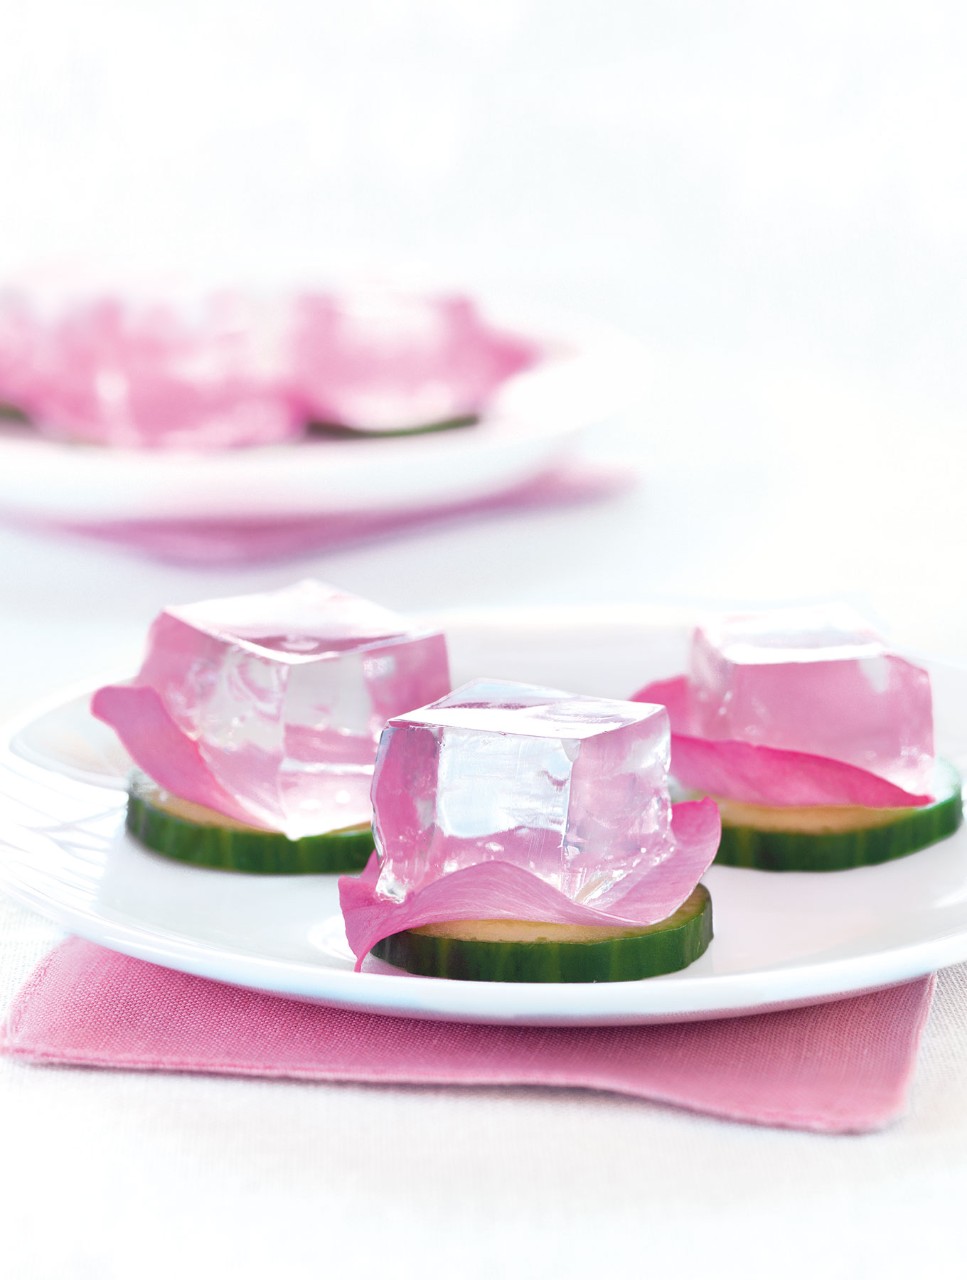 Gin-tonic avec concombre et pétale de rose